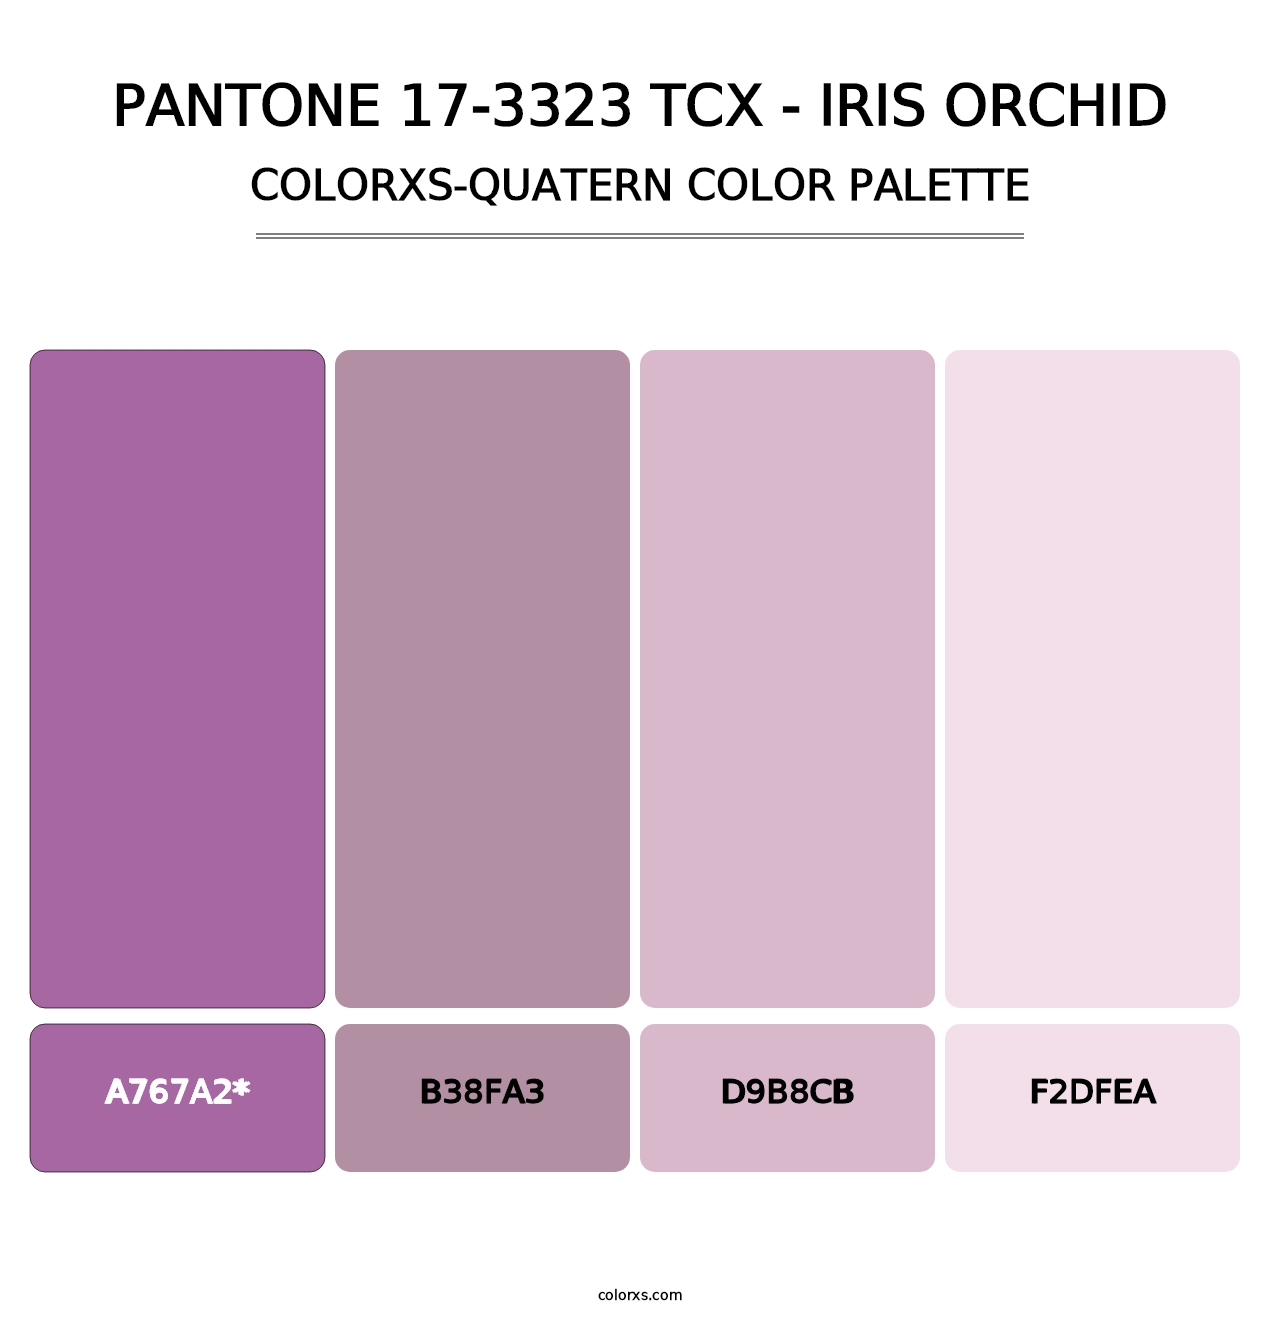 PANTONE 17-3323 TCX - Iris Orchid - Colorxs Quatern Palette